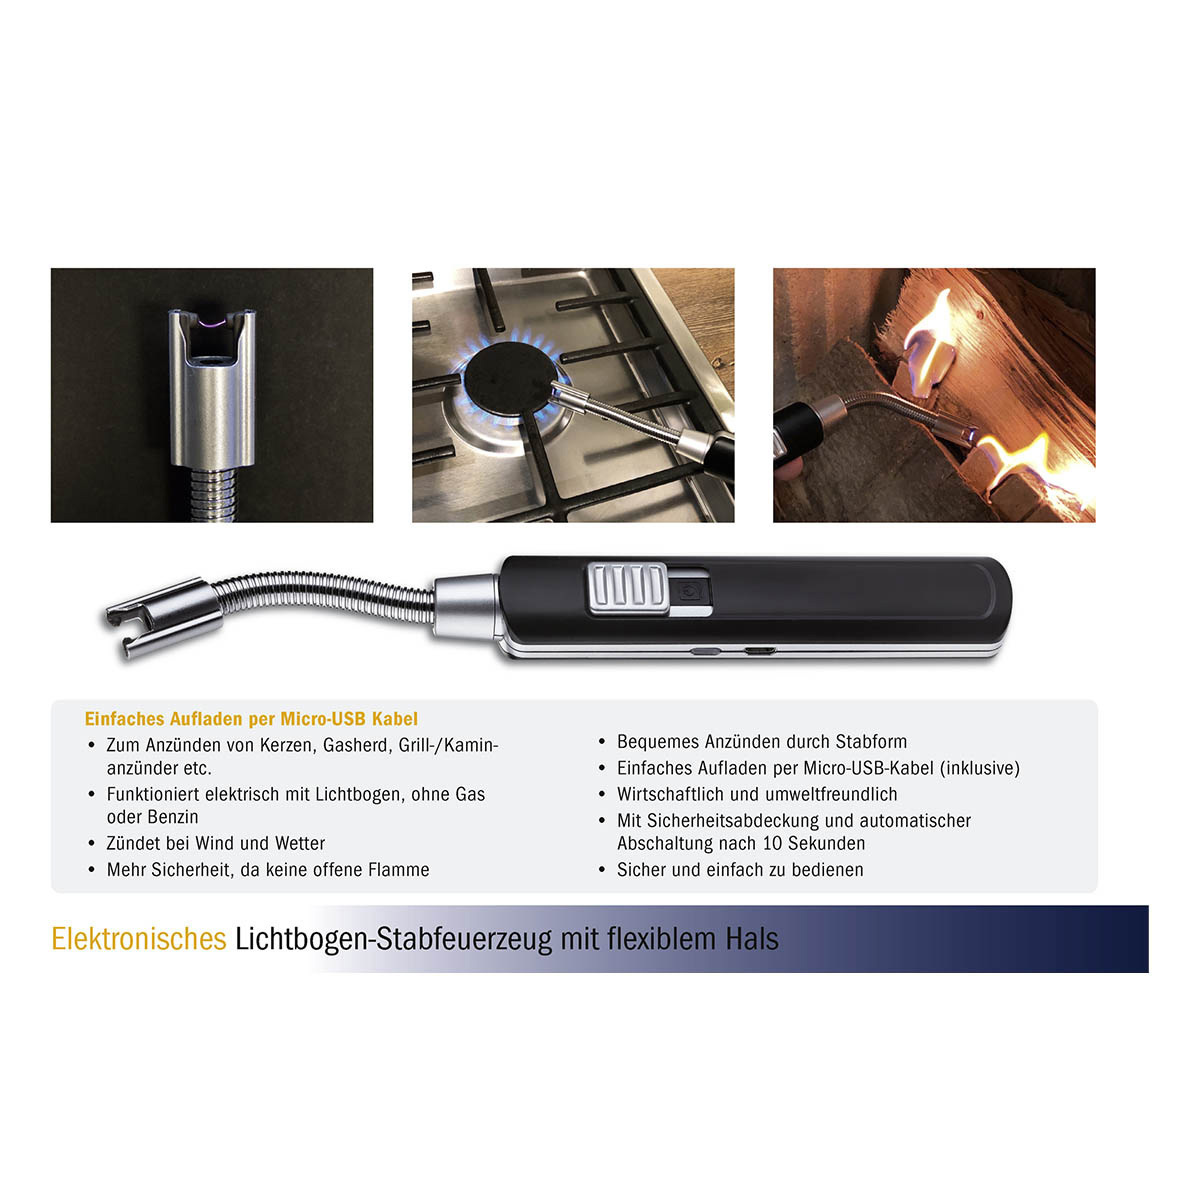 98-1118-01-elektronisches-lichtbogen-stabfeuerzeug-mit-flexiblem-hals-vorteile-1200x1200px.jpg